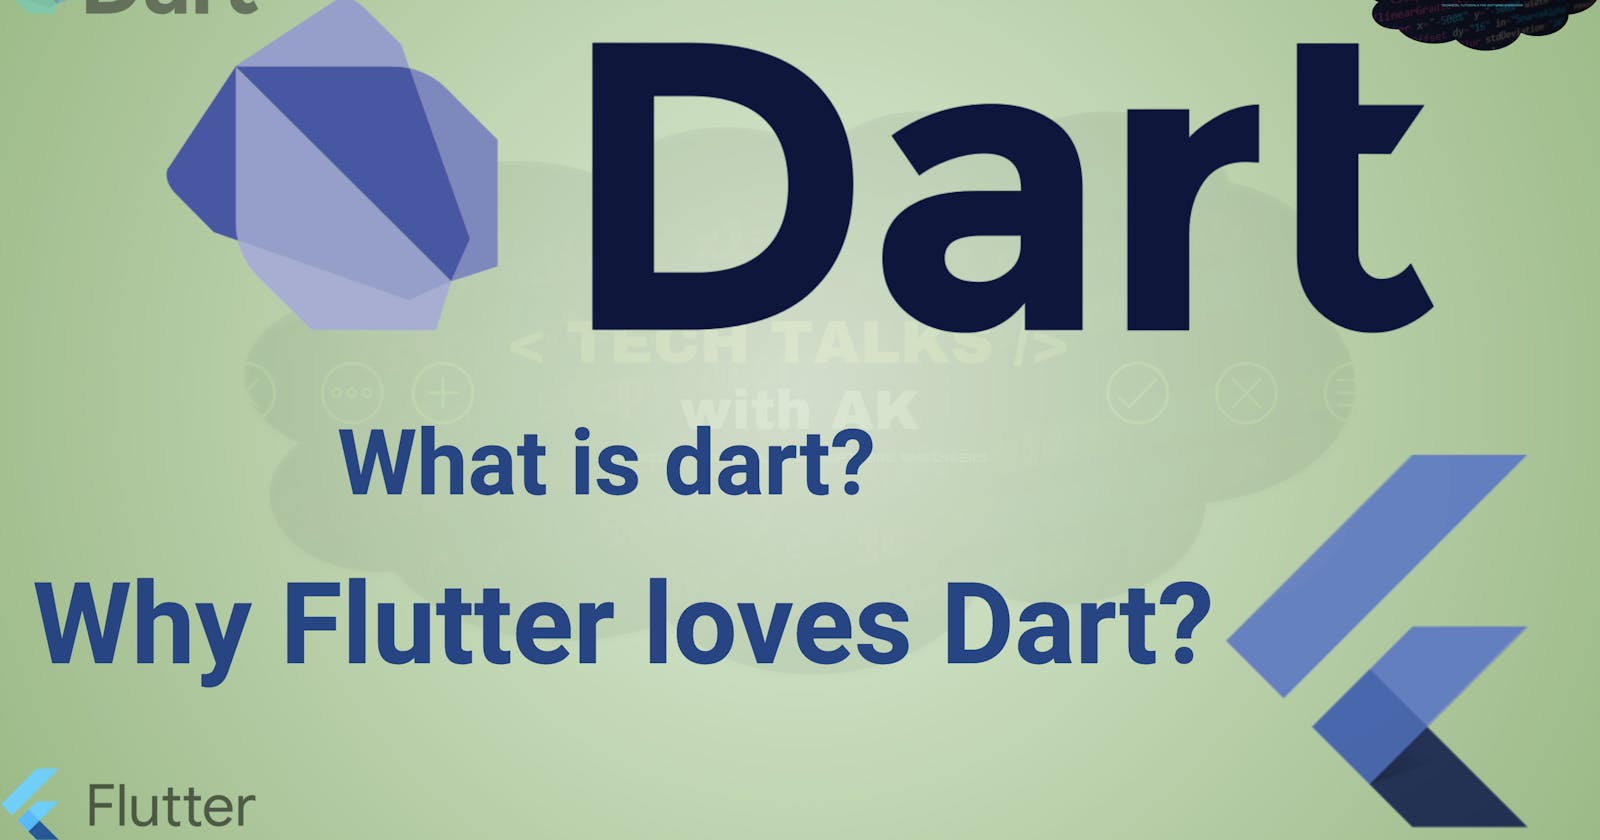 Why Flutter loves Dart